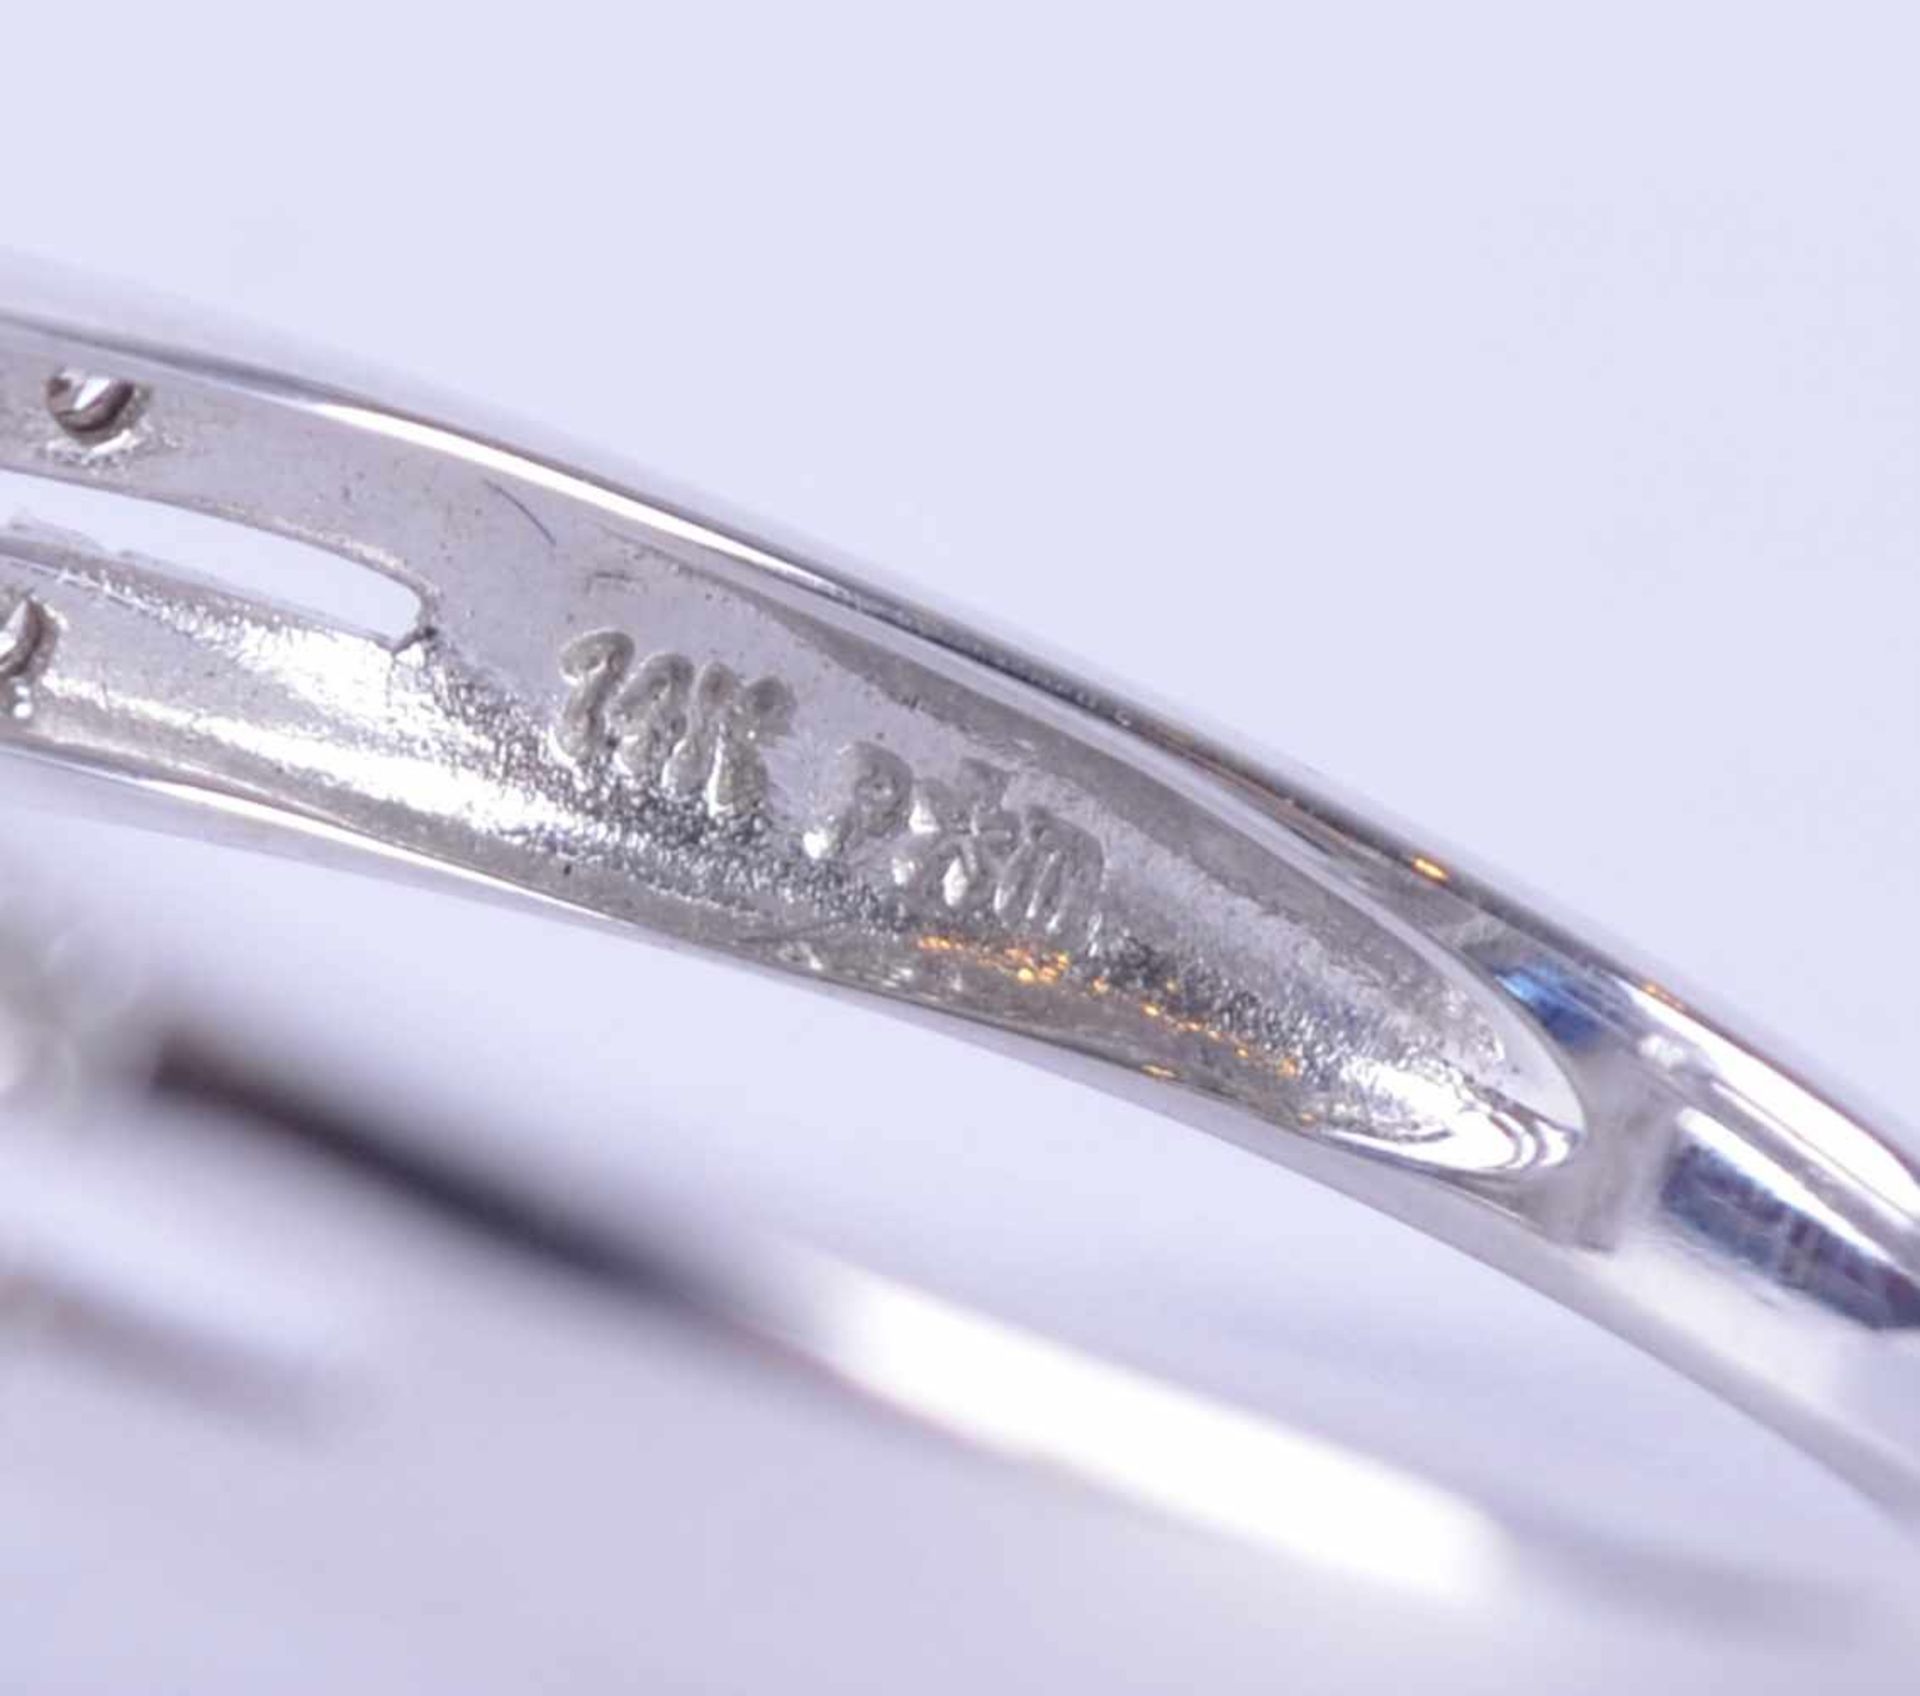 Brillant-Saphirring / Brilliant sapphire ringWG 585/000, Diamanten zusammen 0,20 ct, Saphir 0,50 ct, - Bild 5 aus 5